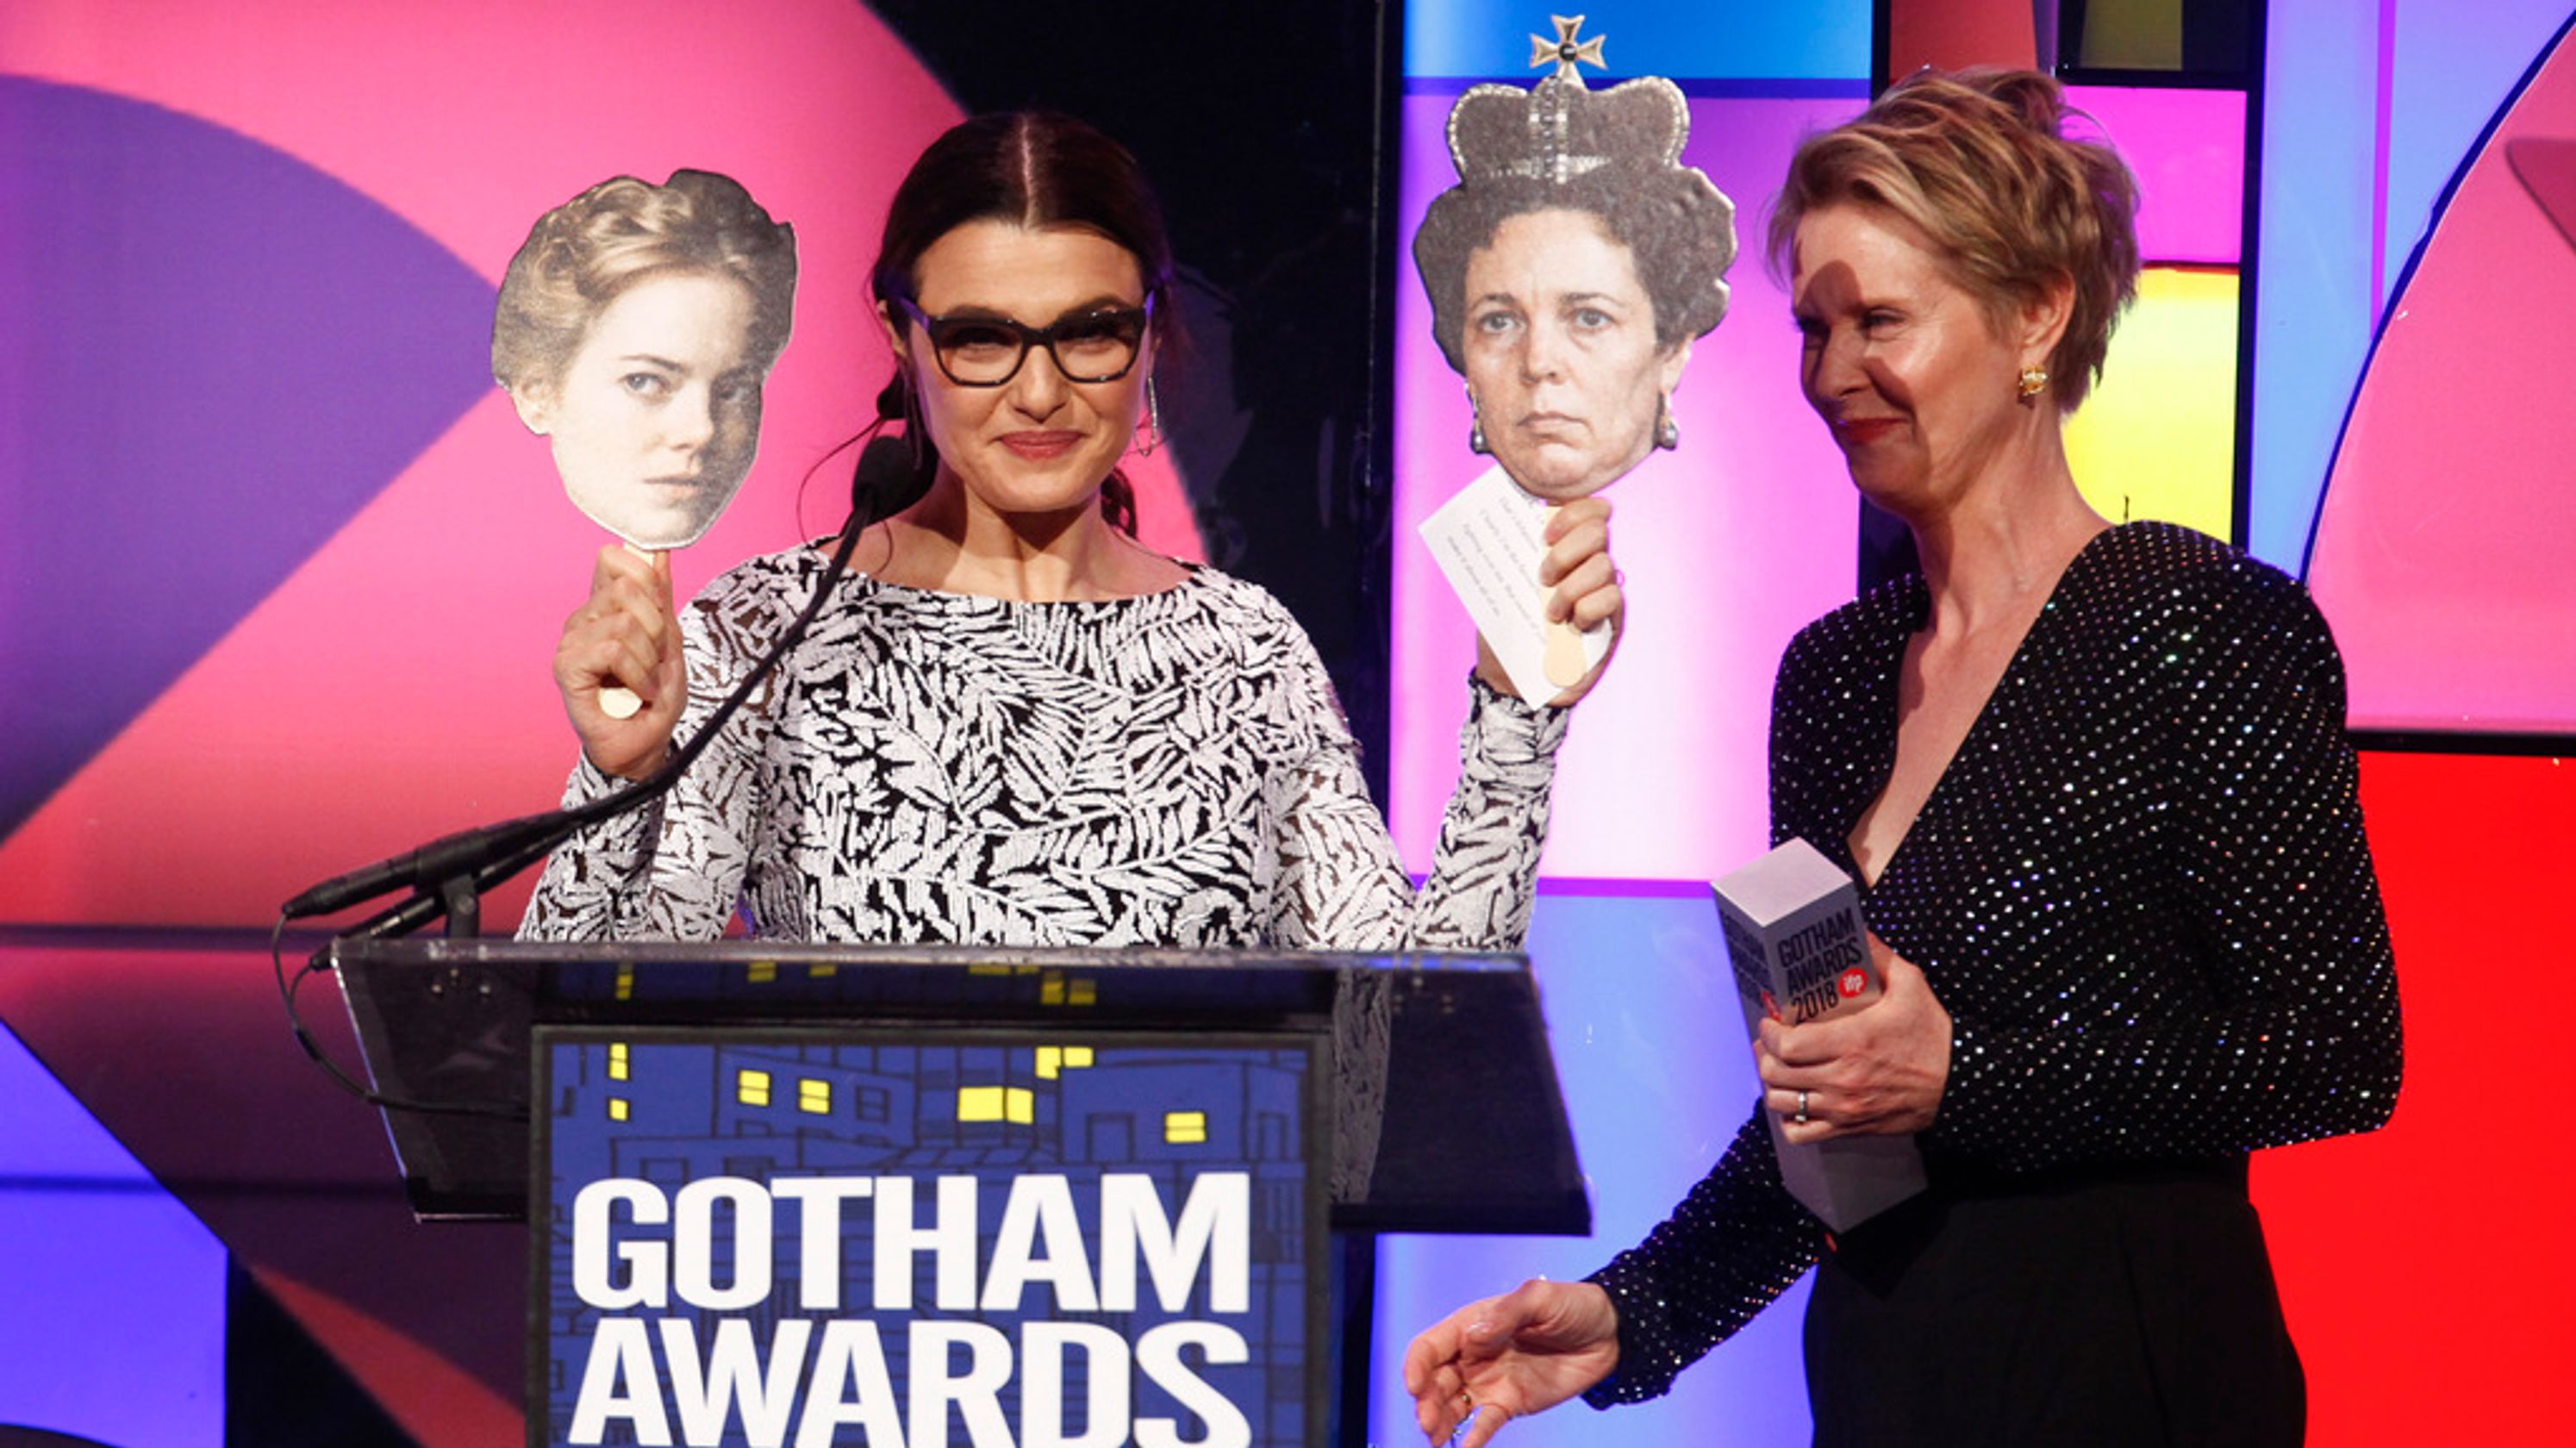 Итан Хоук, Уиллем Дефо и другие звезды посетили церемонию Gotham Awards